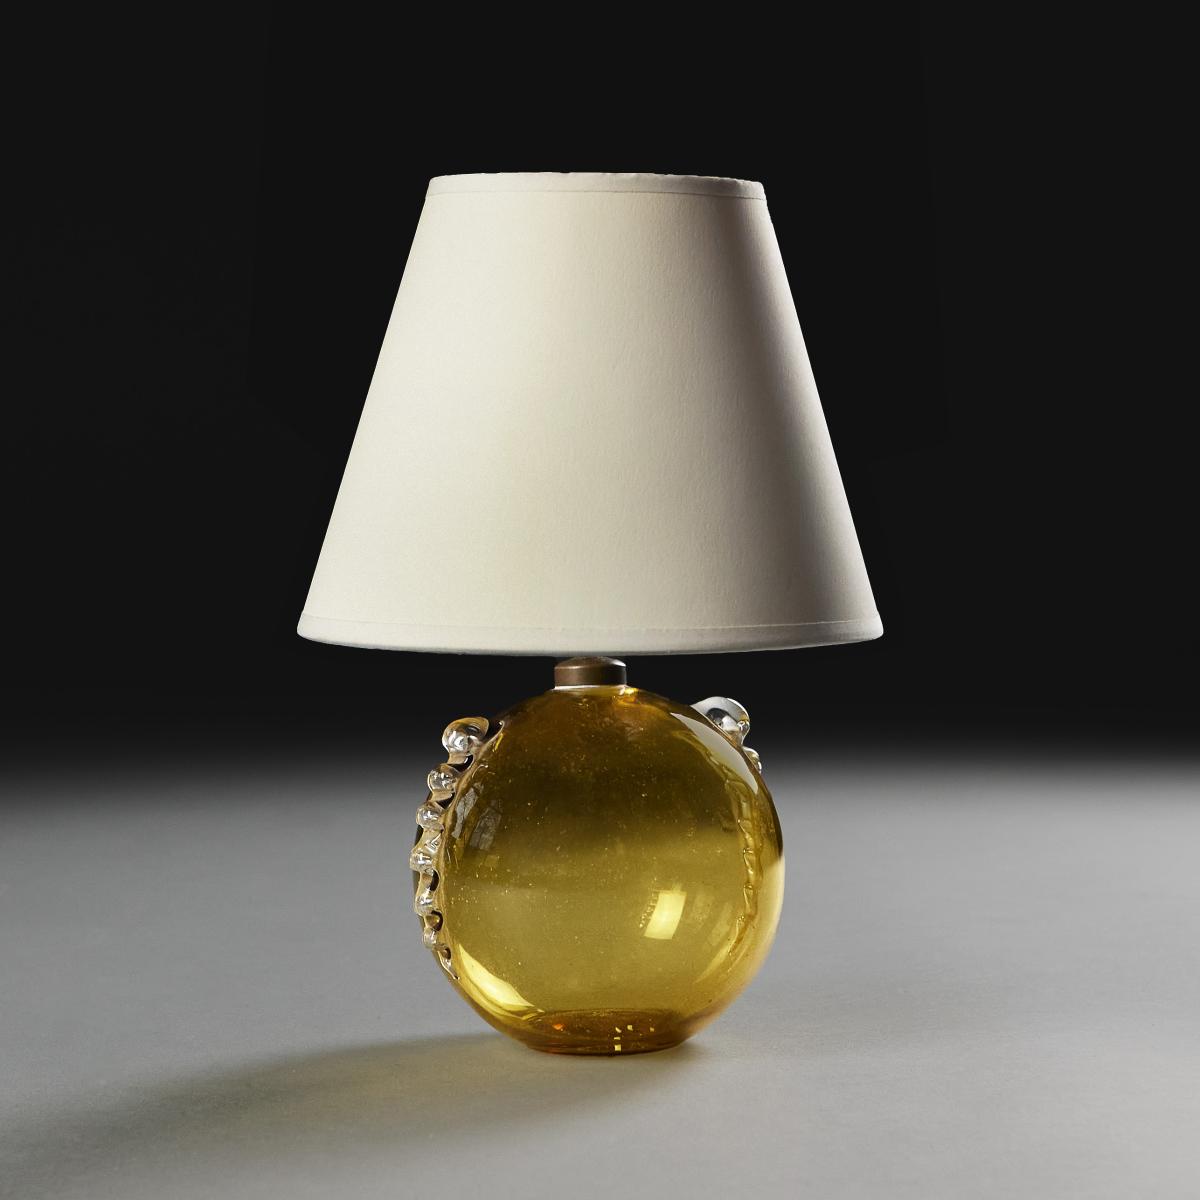 A Murano Bubble Lamp